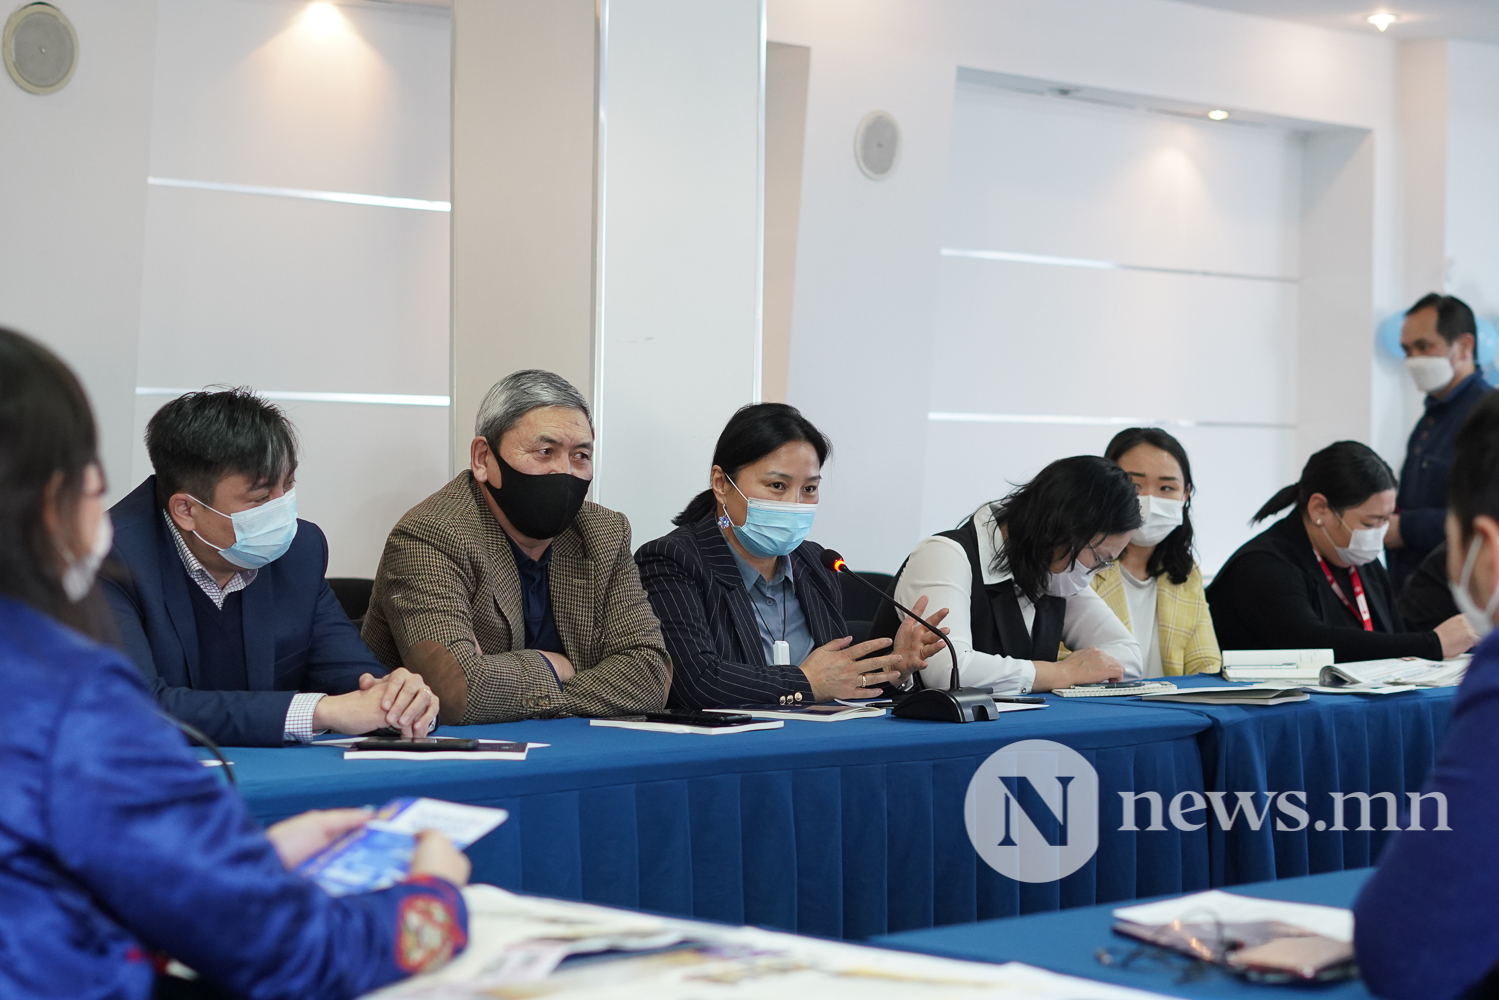 Монгол бичгийн үндэсний хөтөлбөрийг хэрэгжүүлэхэд хэвлэл мэдээллийн байгууллагуудын үүрэг, оролцоо (11 of 14)